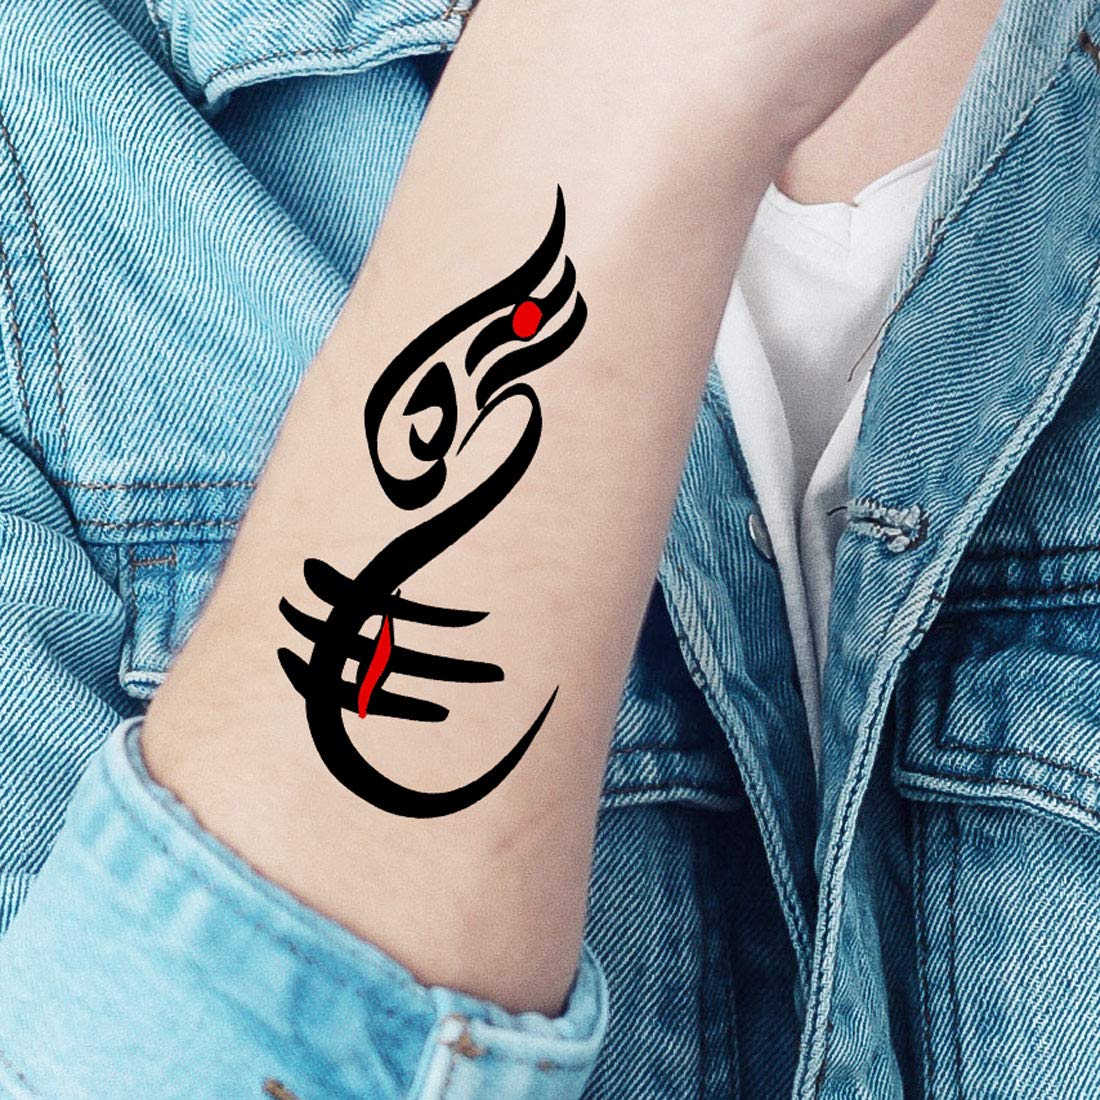 Tattoo uploaded by Rtattoo studio • Kshatriyakulavatansa calligraphy tattoo..  #chatrapati #shivajimaharaj #chatrapatishivajimaharaj #chatrapatishivaji  ##maharaj #kshatriyakulavatans #sambhaji #maratha #tattoo #tattooed # tattooing #tattooidea ...